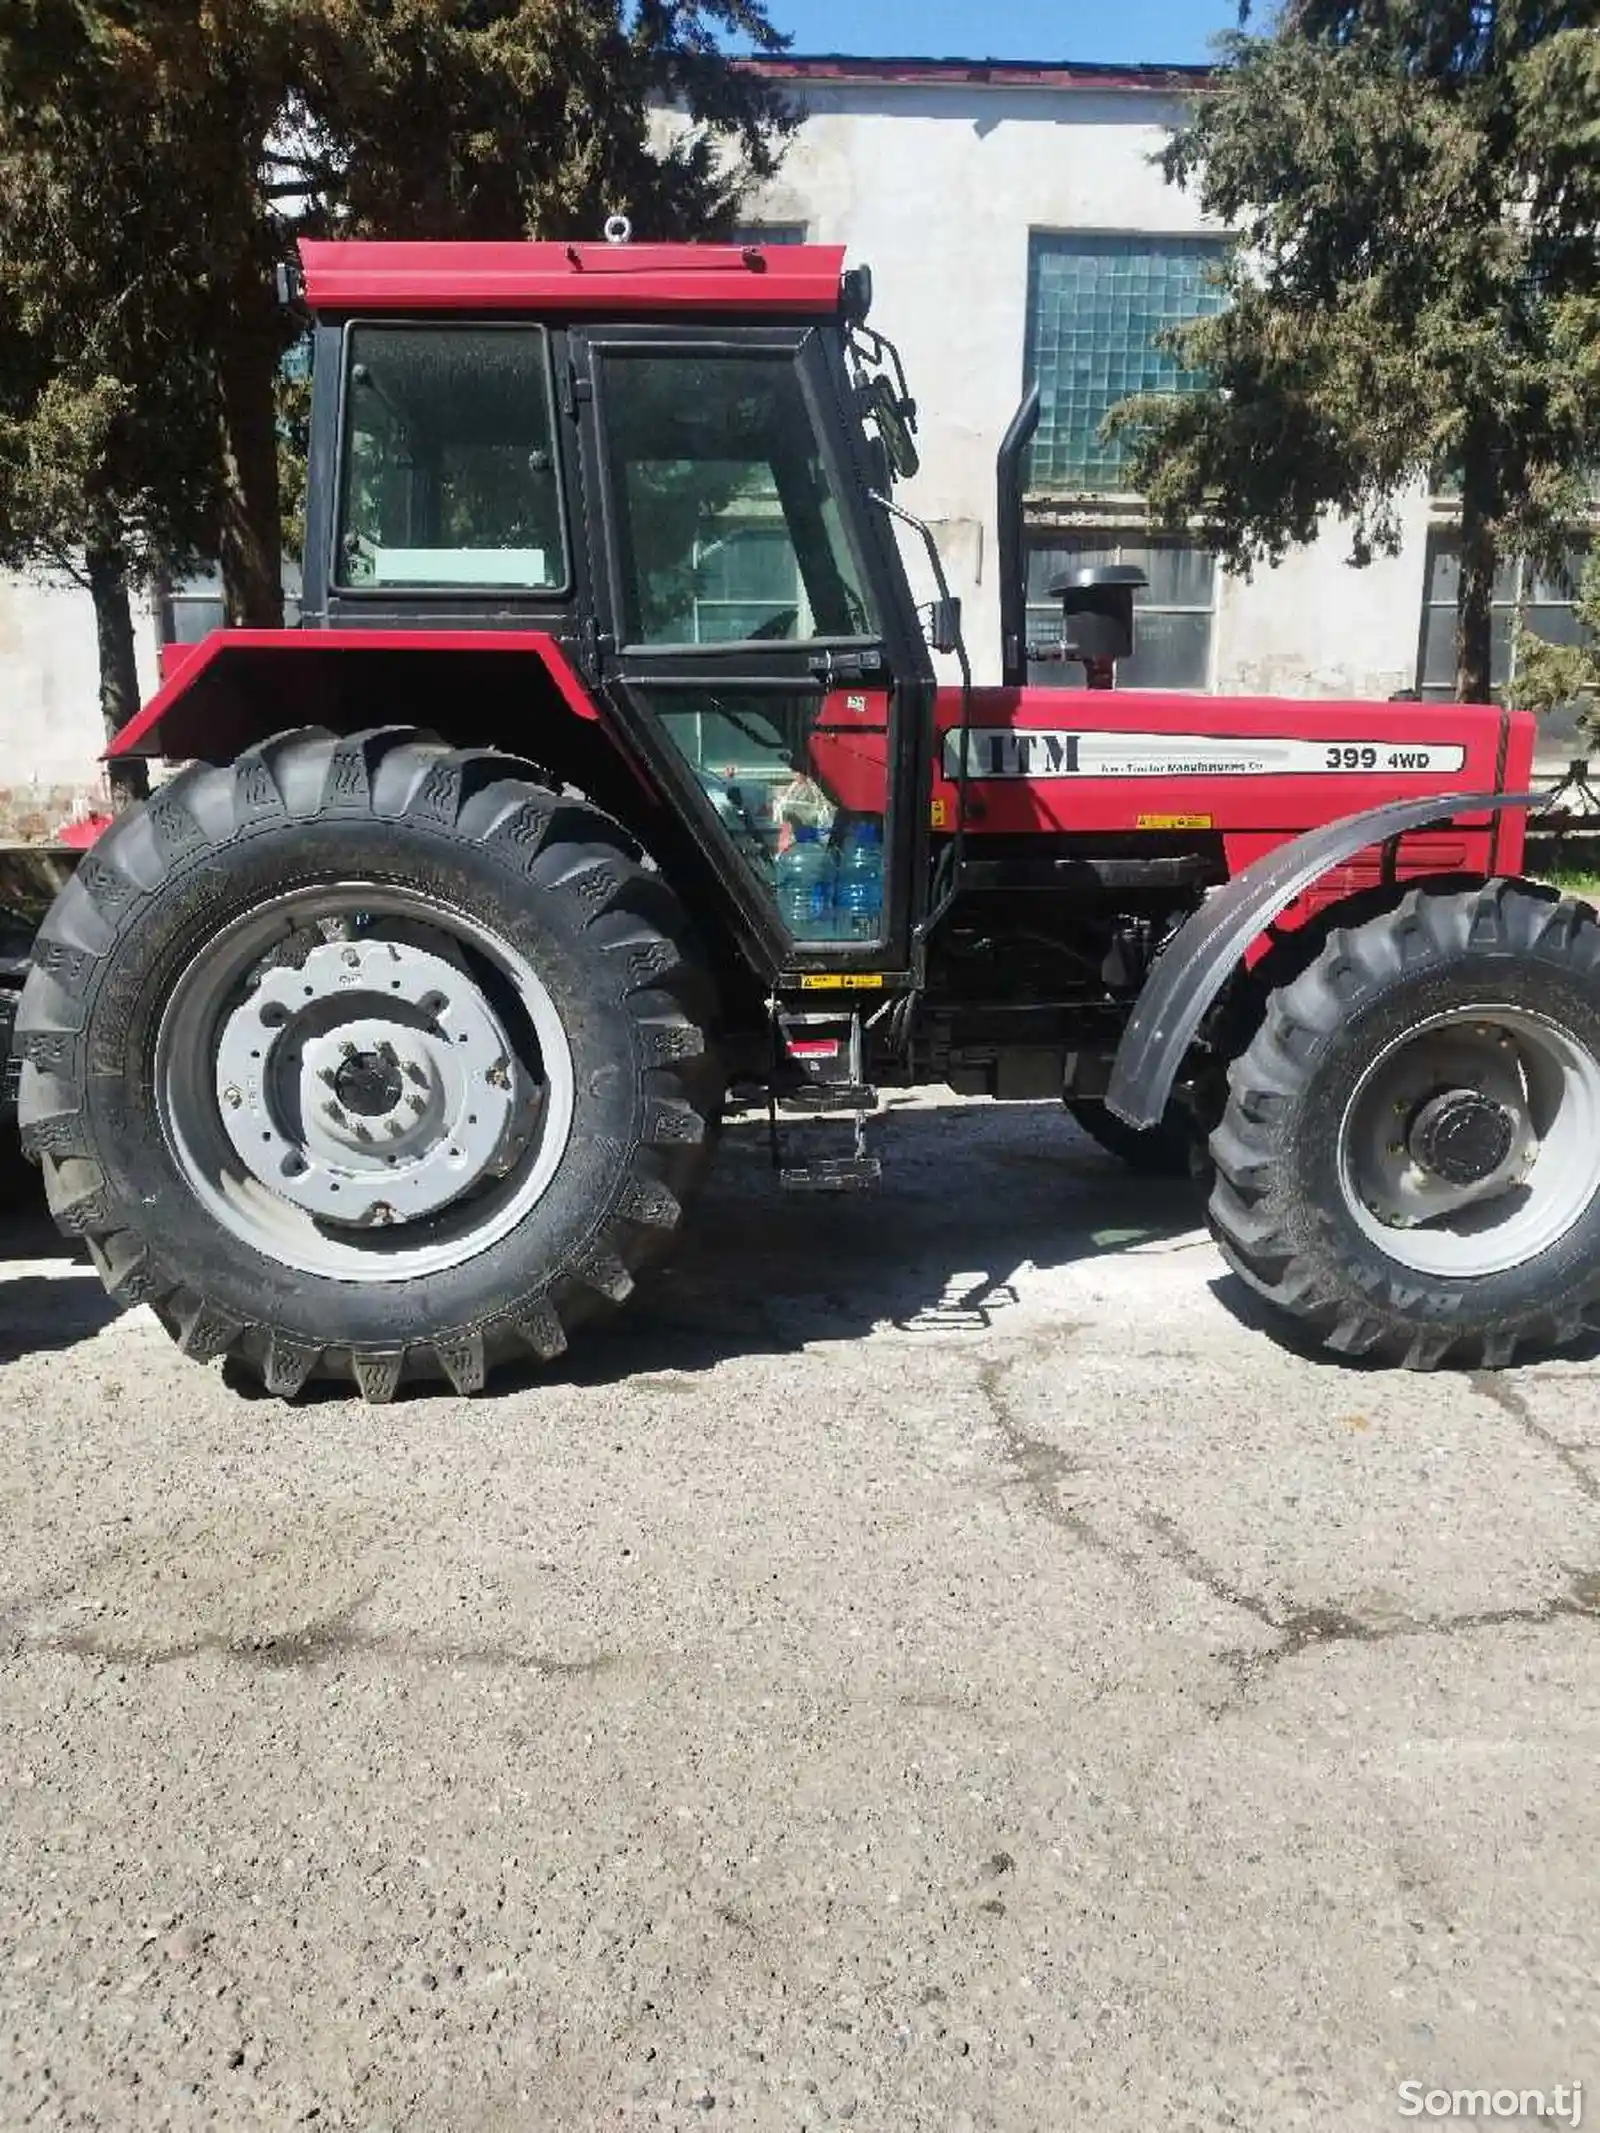 Трактор Tajiran 399-4Wd-4